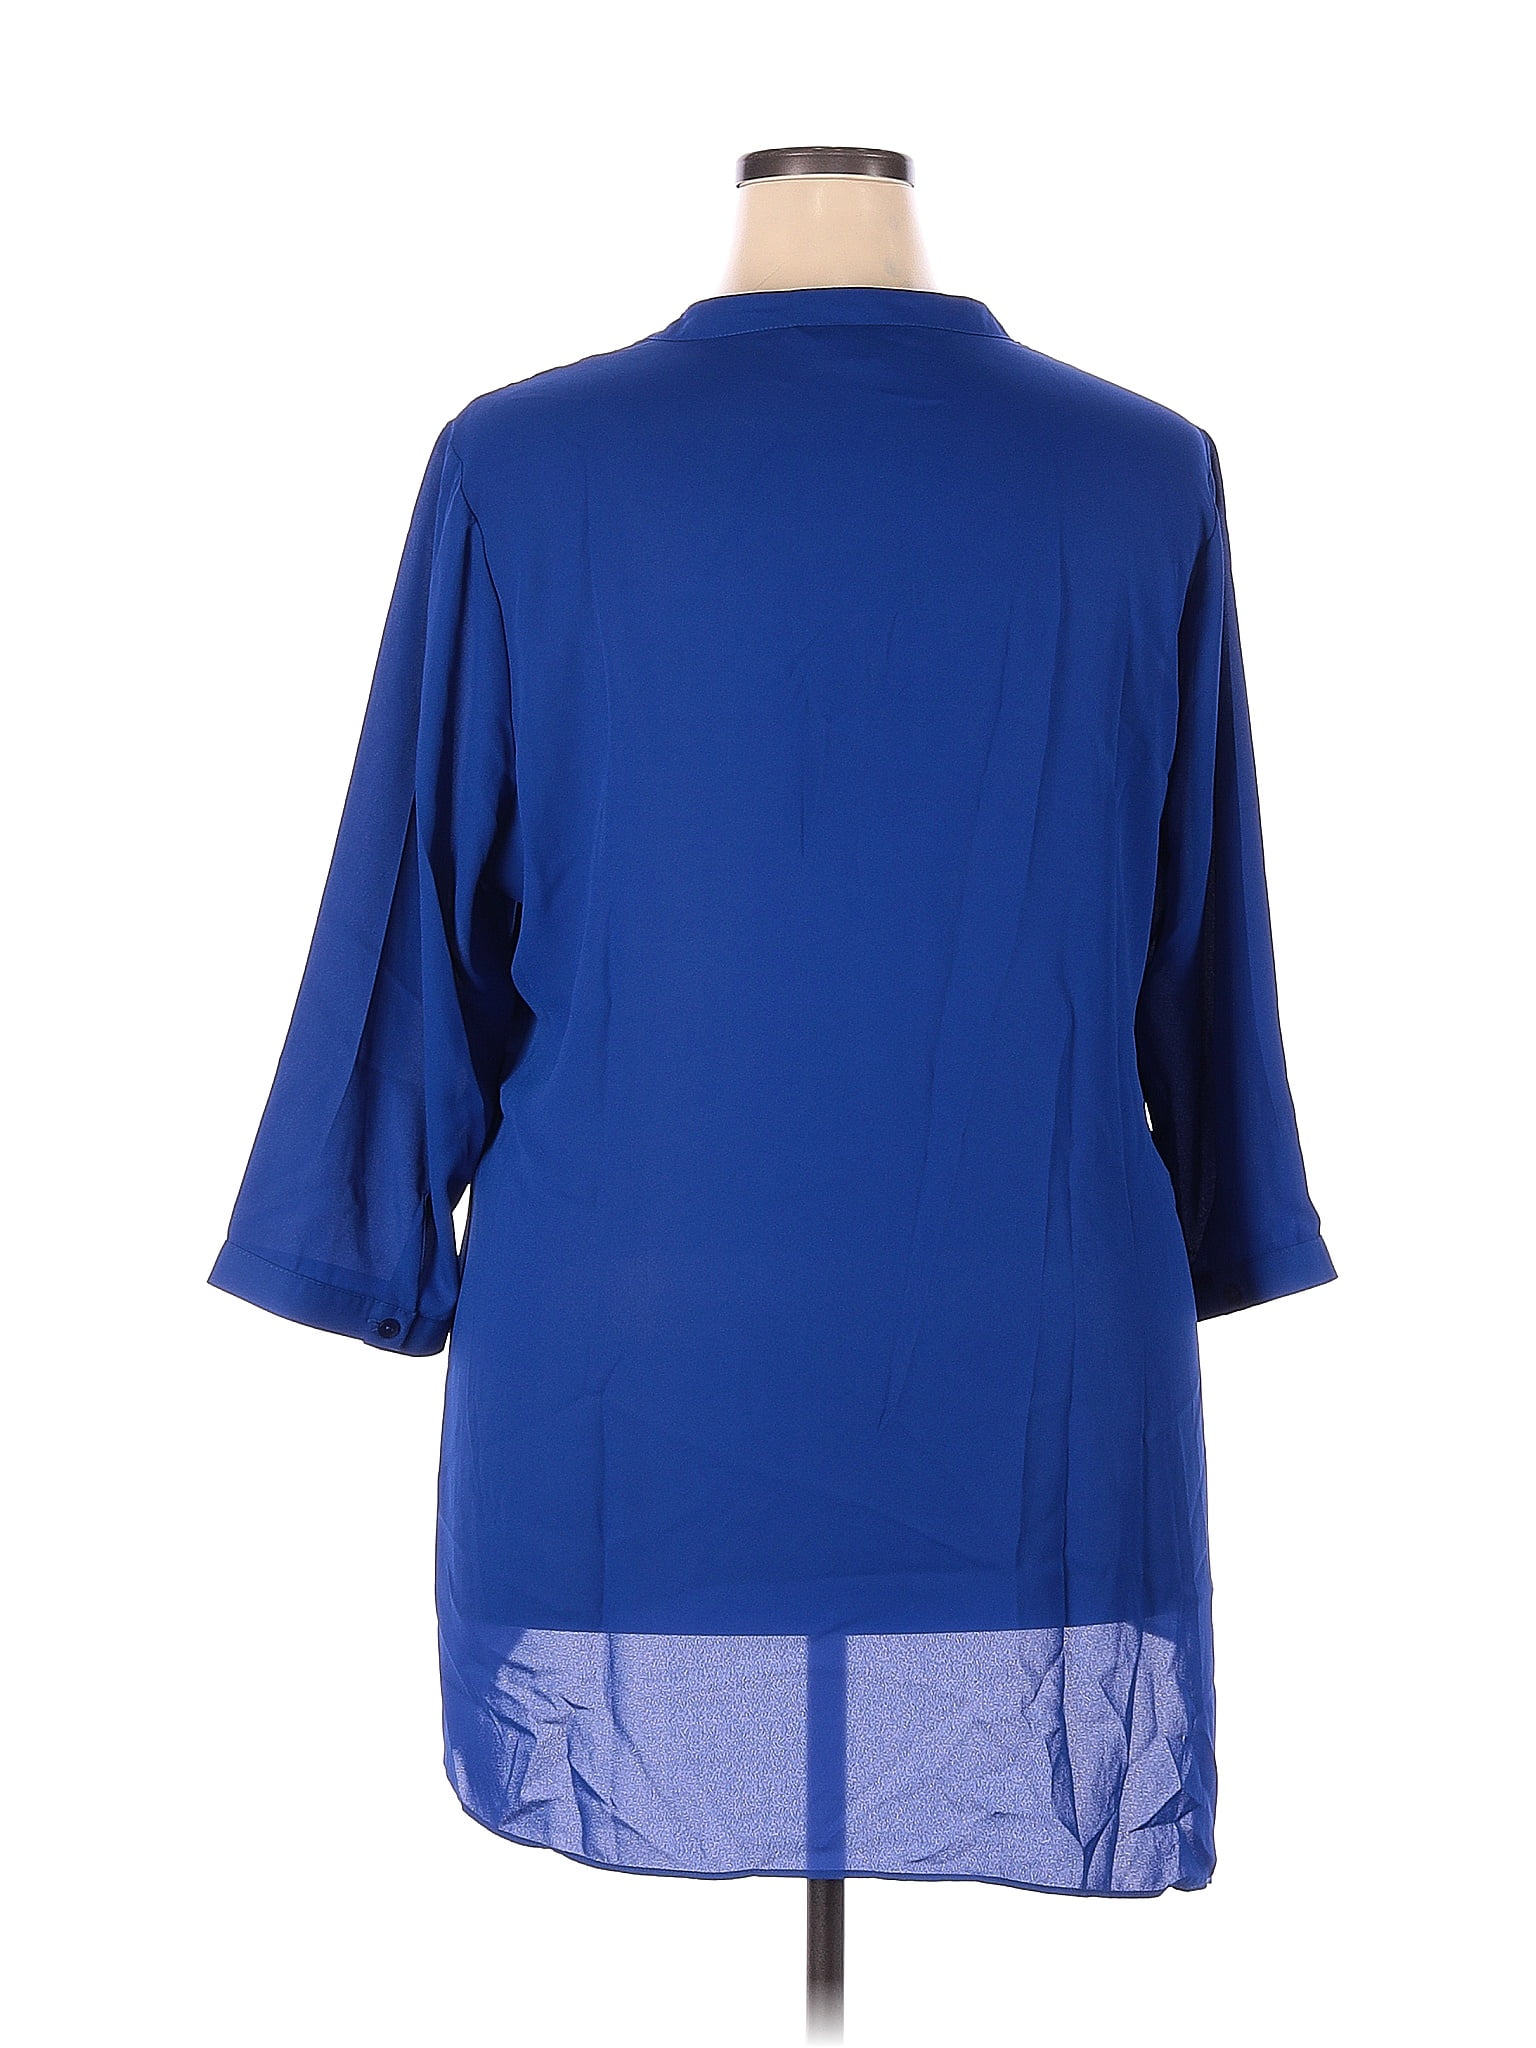 J.Jill Solid Blue Casual Dress Size 2X (Plus) - 69% off